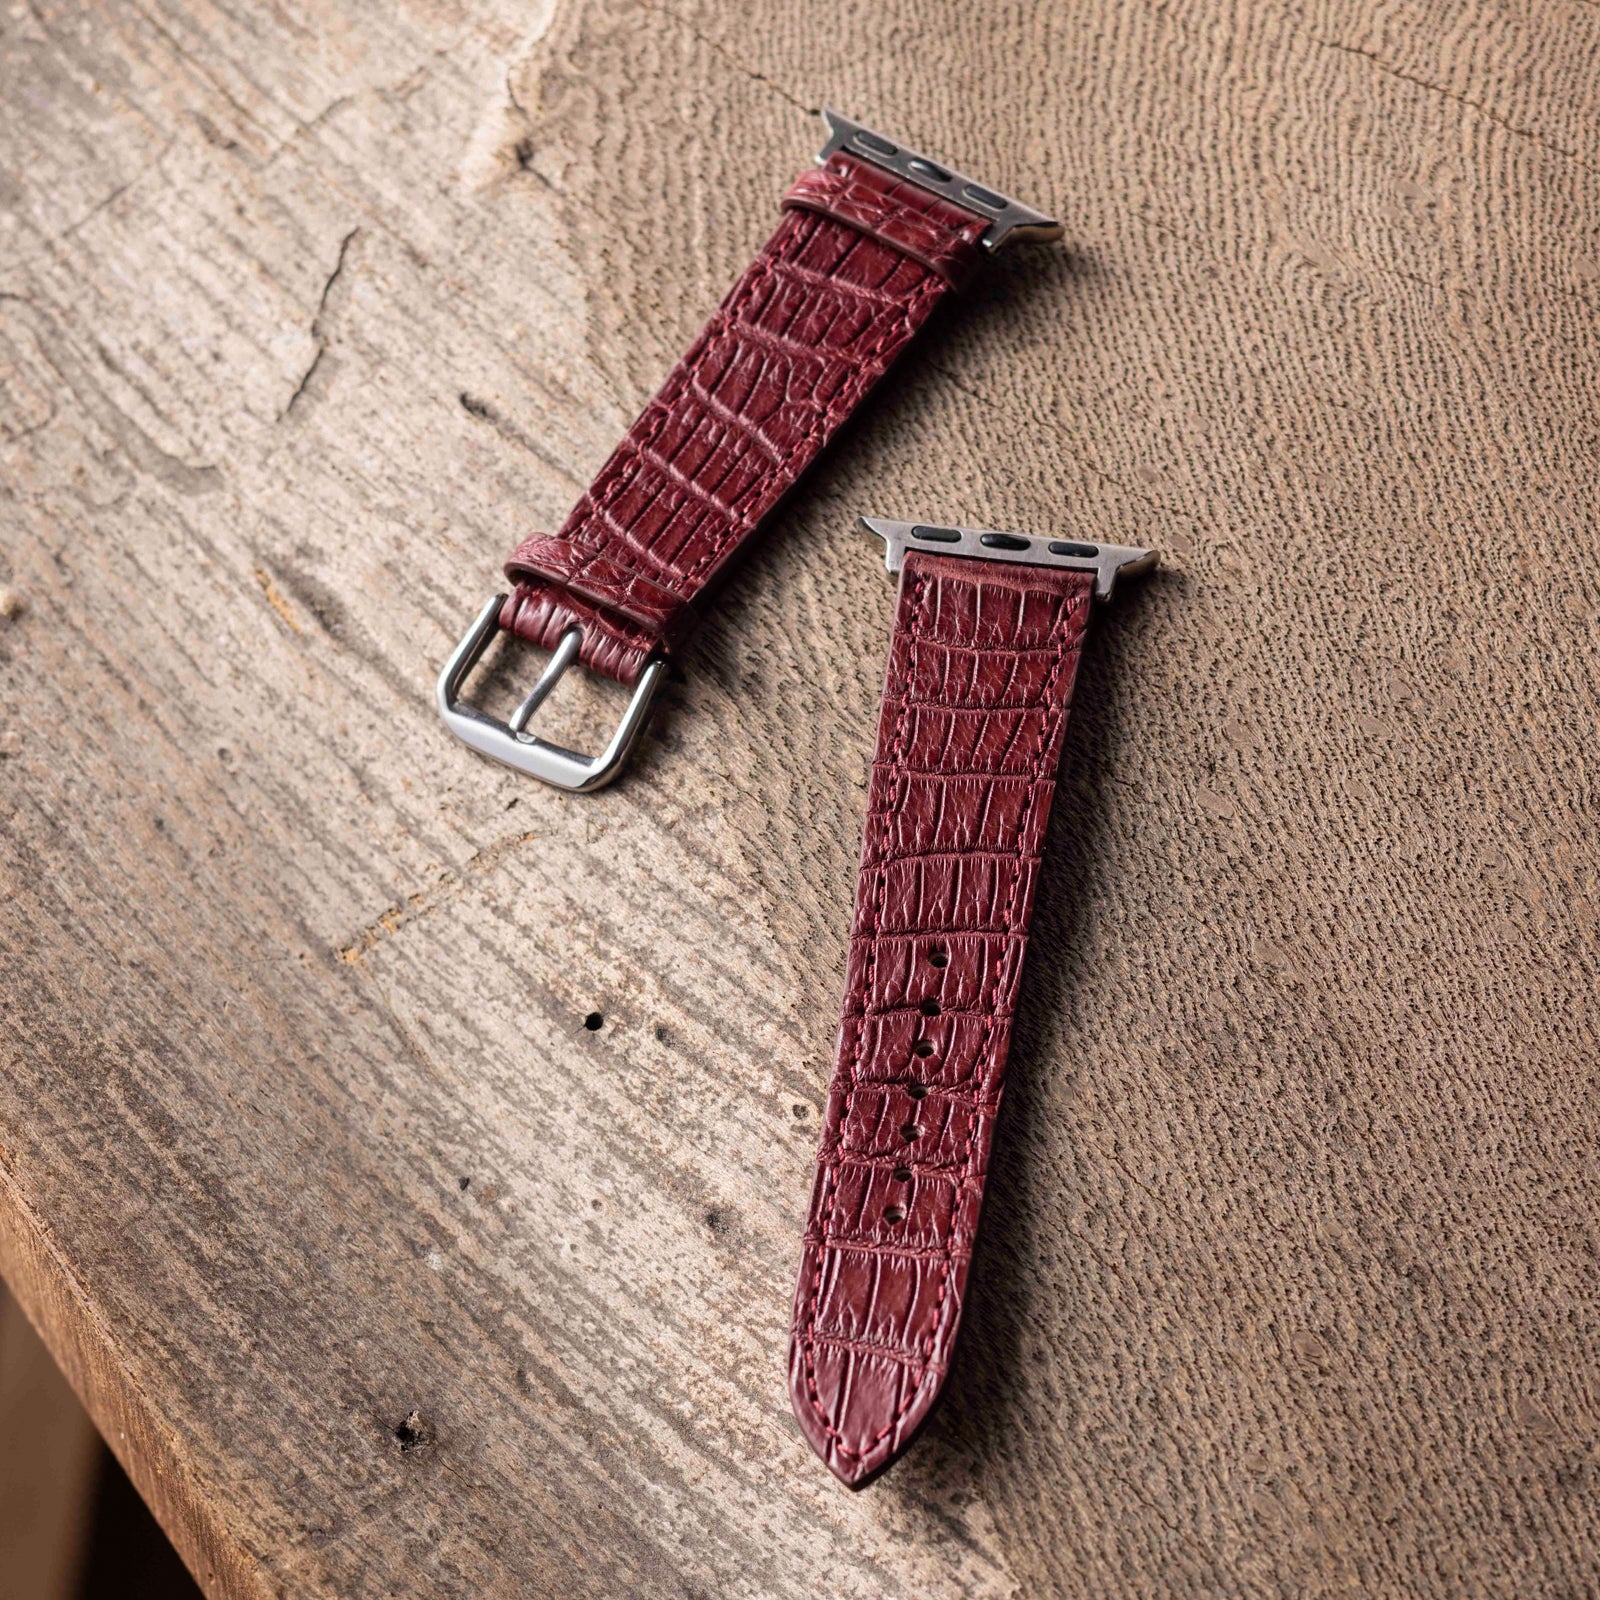 Apple Watch leather belt (44MM/40MM) crocodile